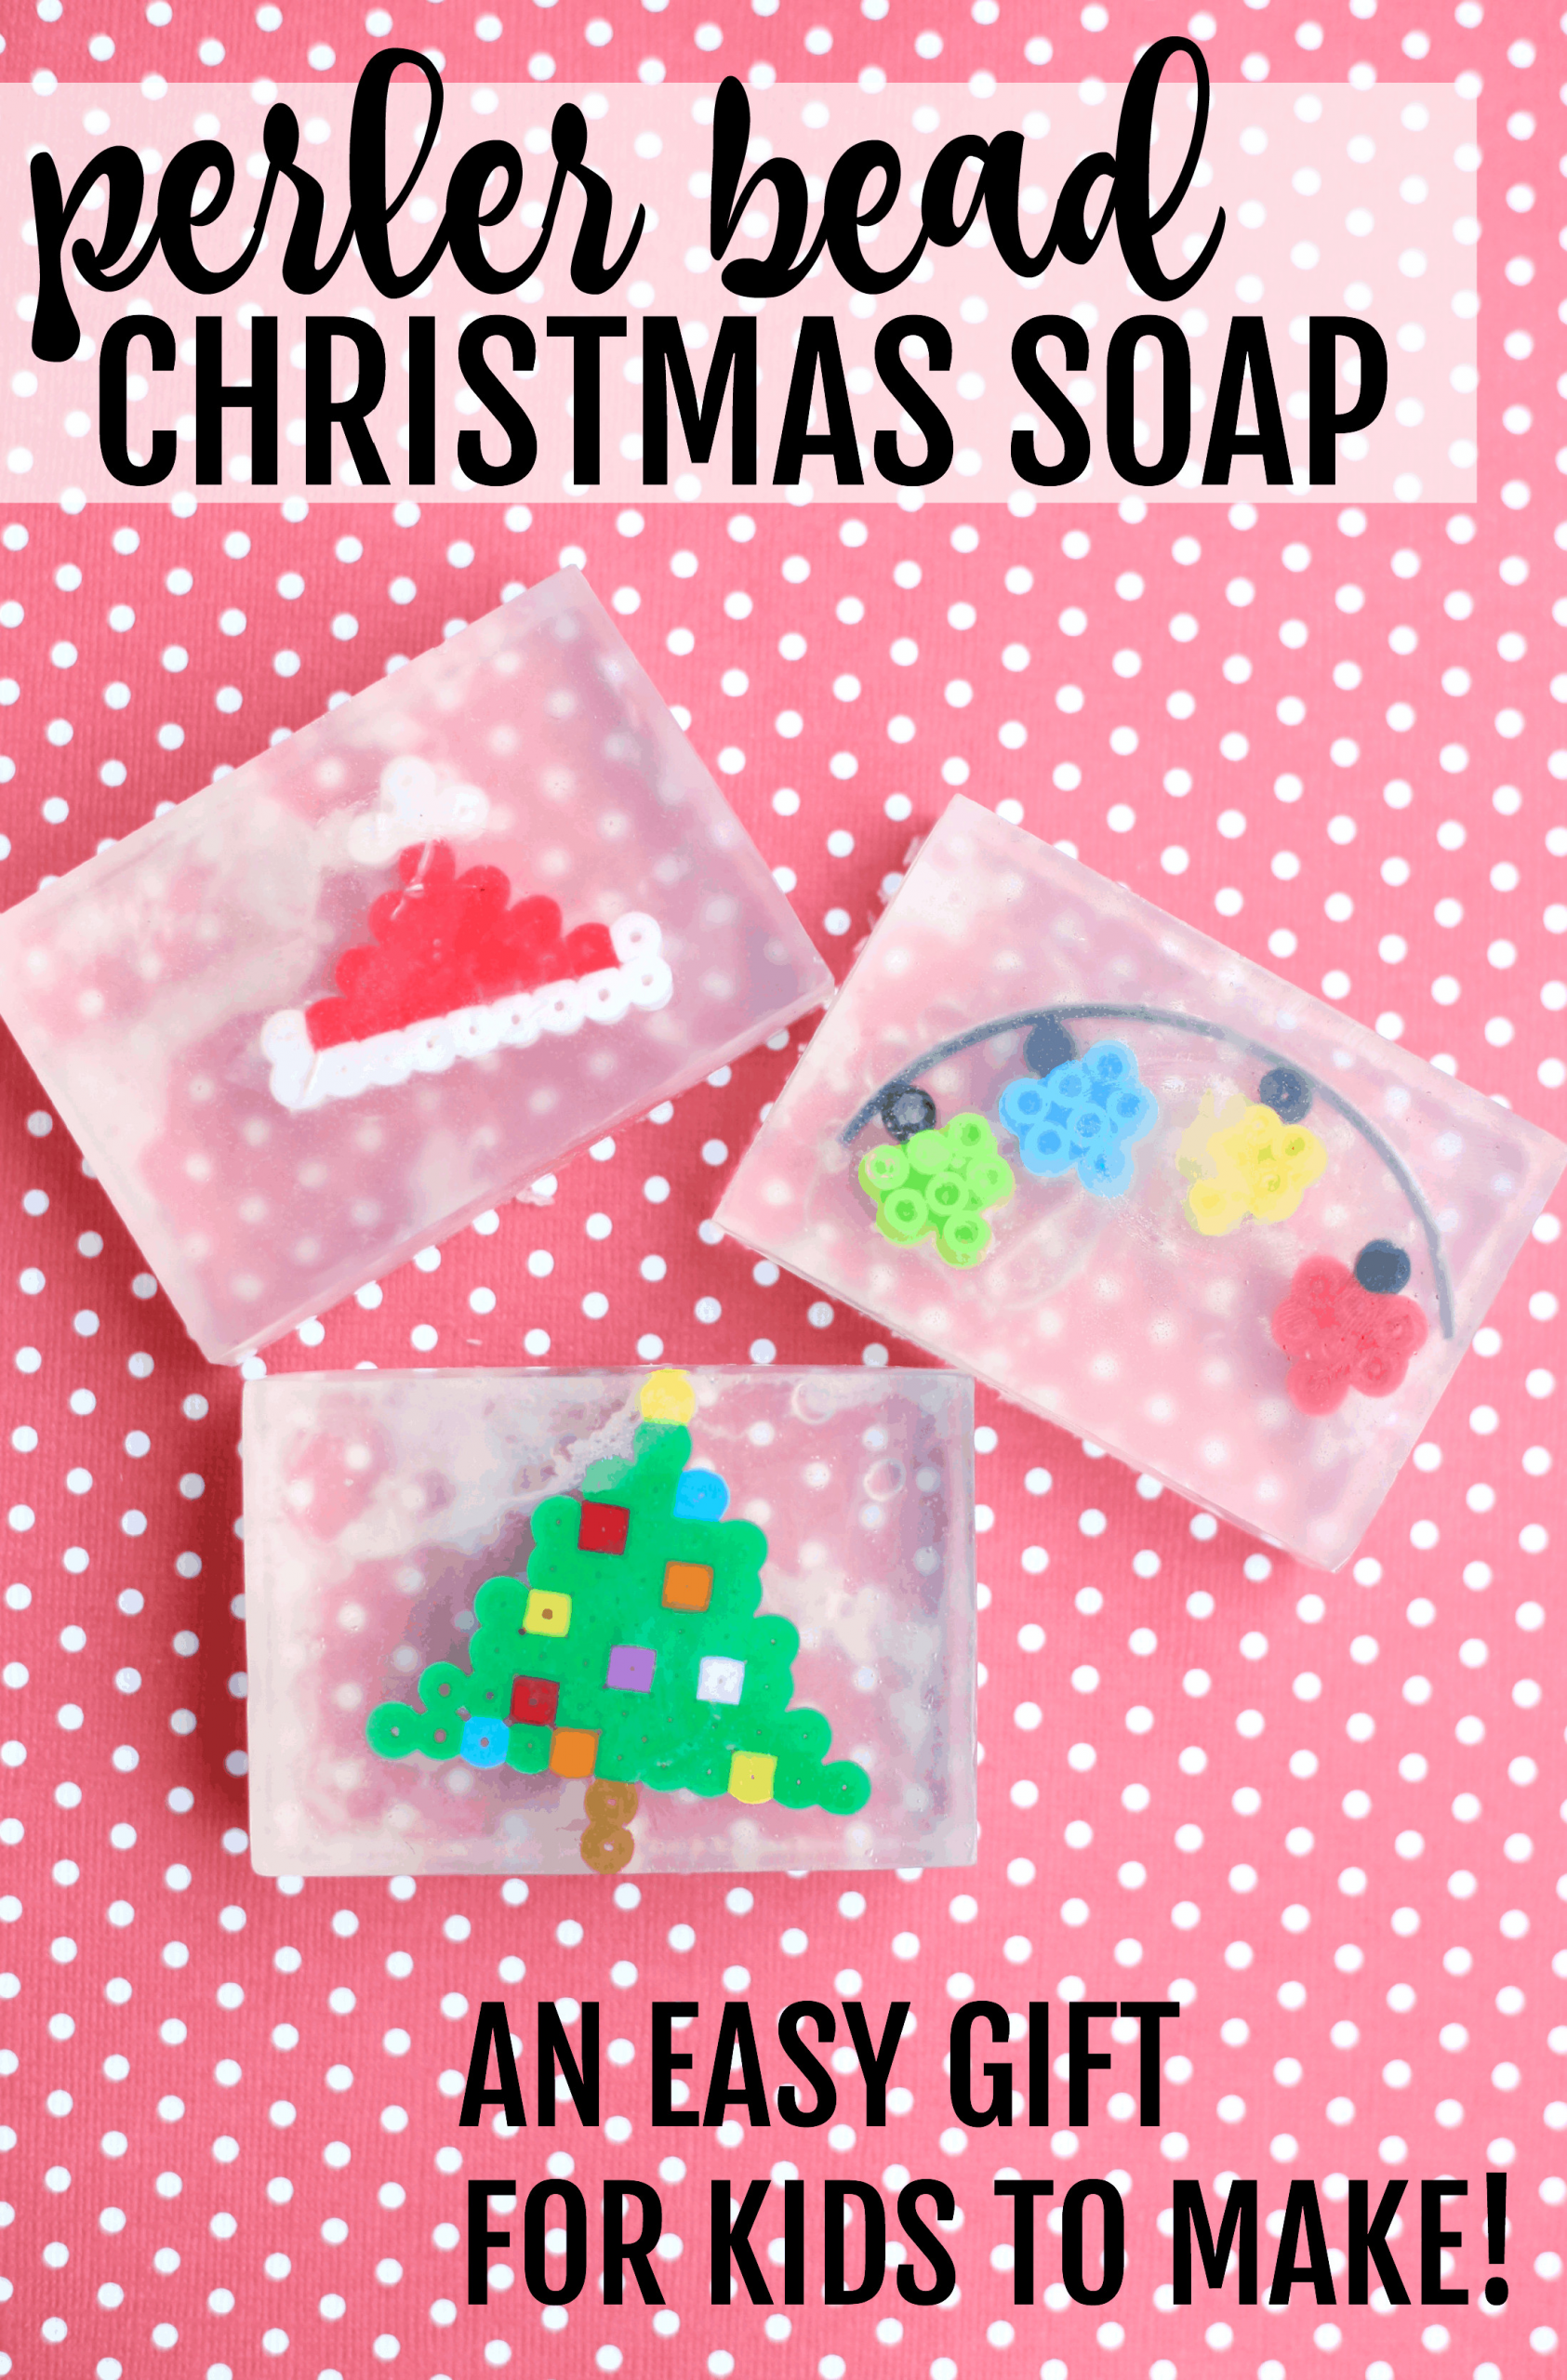 Easy Christmas Gifts For Kids
 Perler Bead Christmas Soap Easy Gift for Kids to Make I